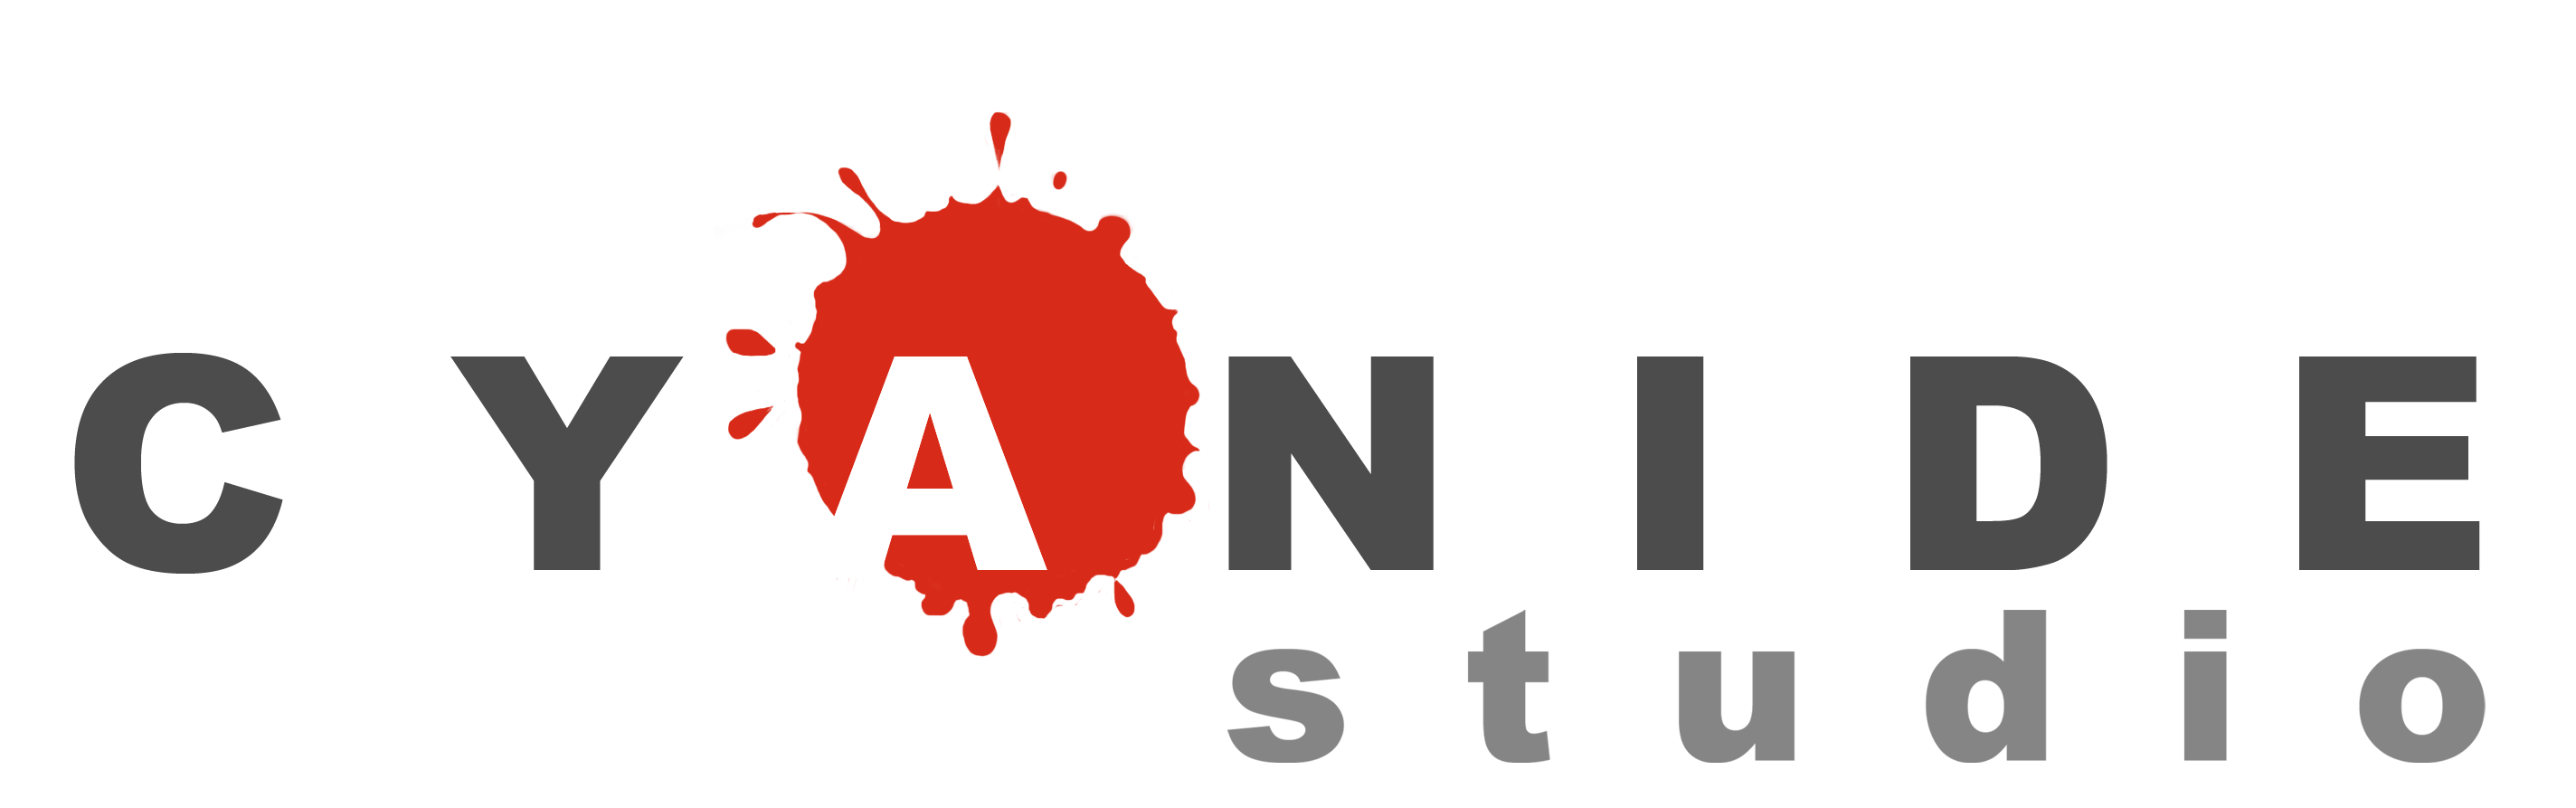 cyanide_logo